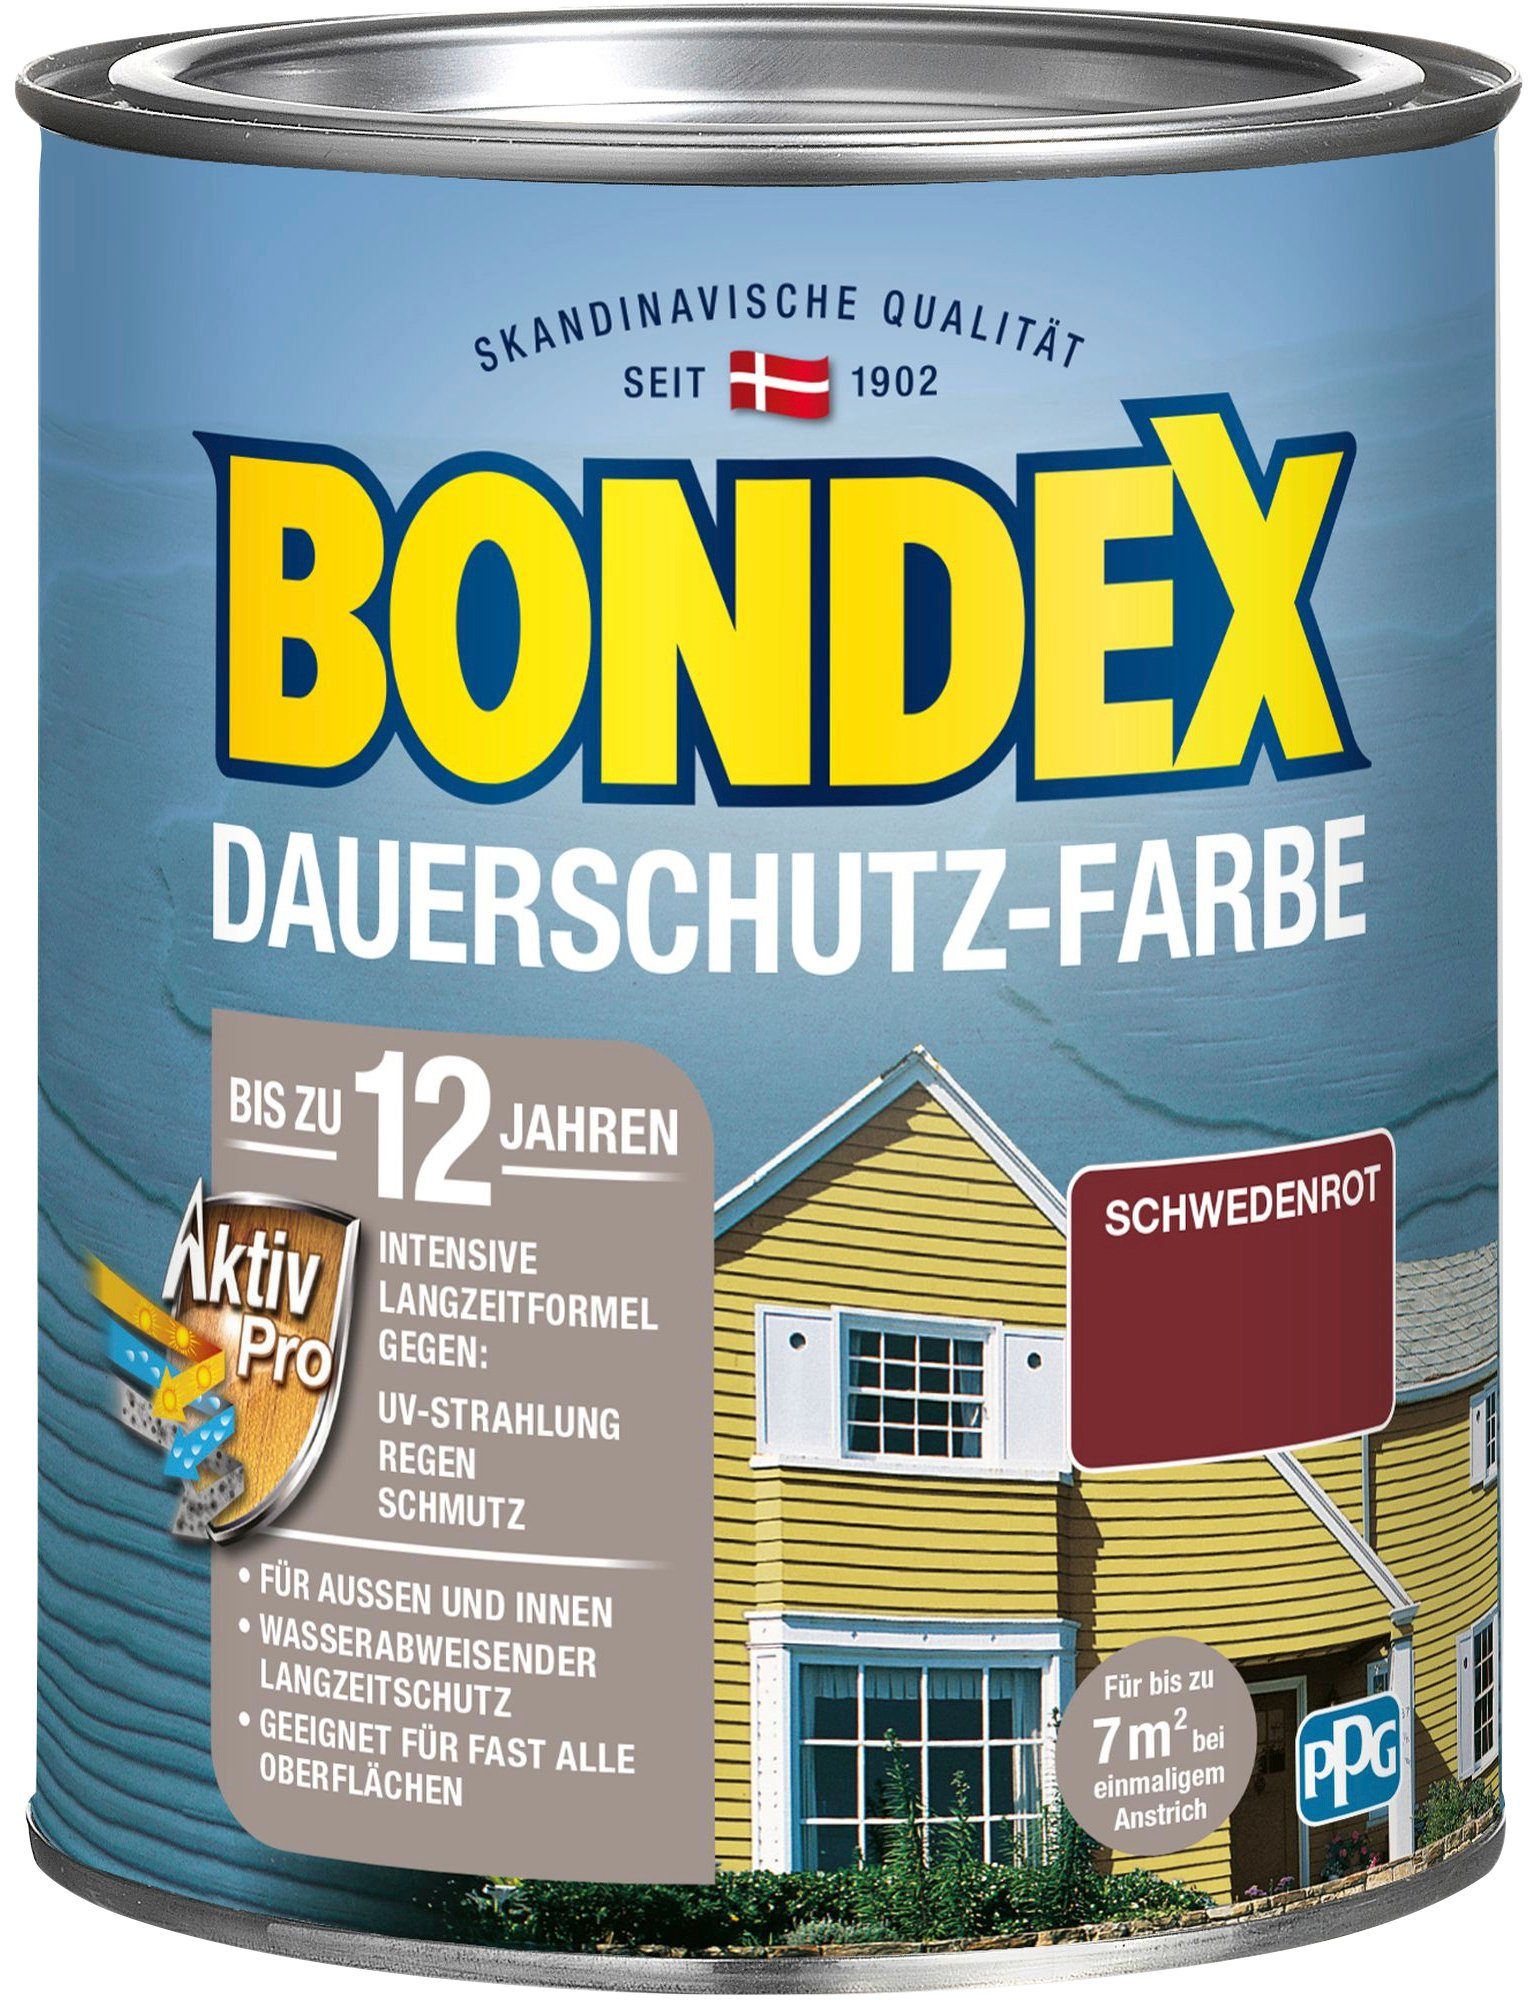 Bondex Wetterschutzfarbe DAUERSCHUTZ-FARBE, für Außen und Innen, Wetterschutz mit Aktiv Pro Langzeitformel schwedenrot